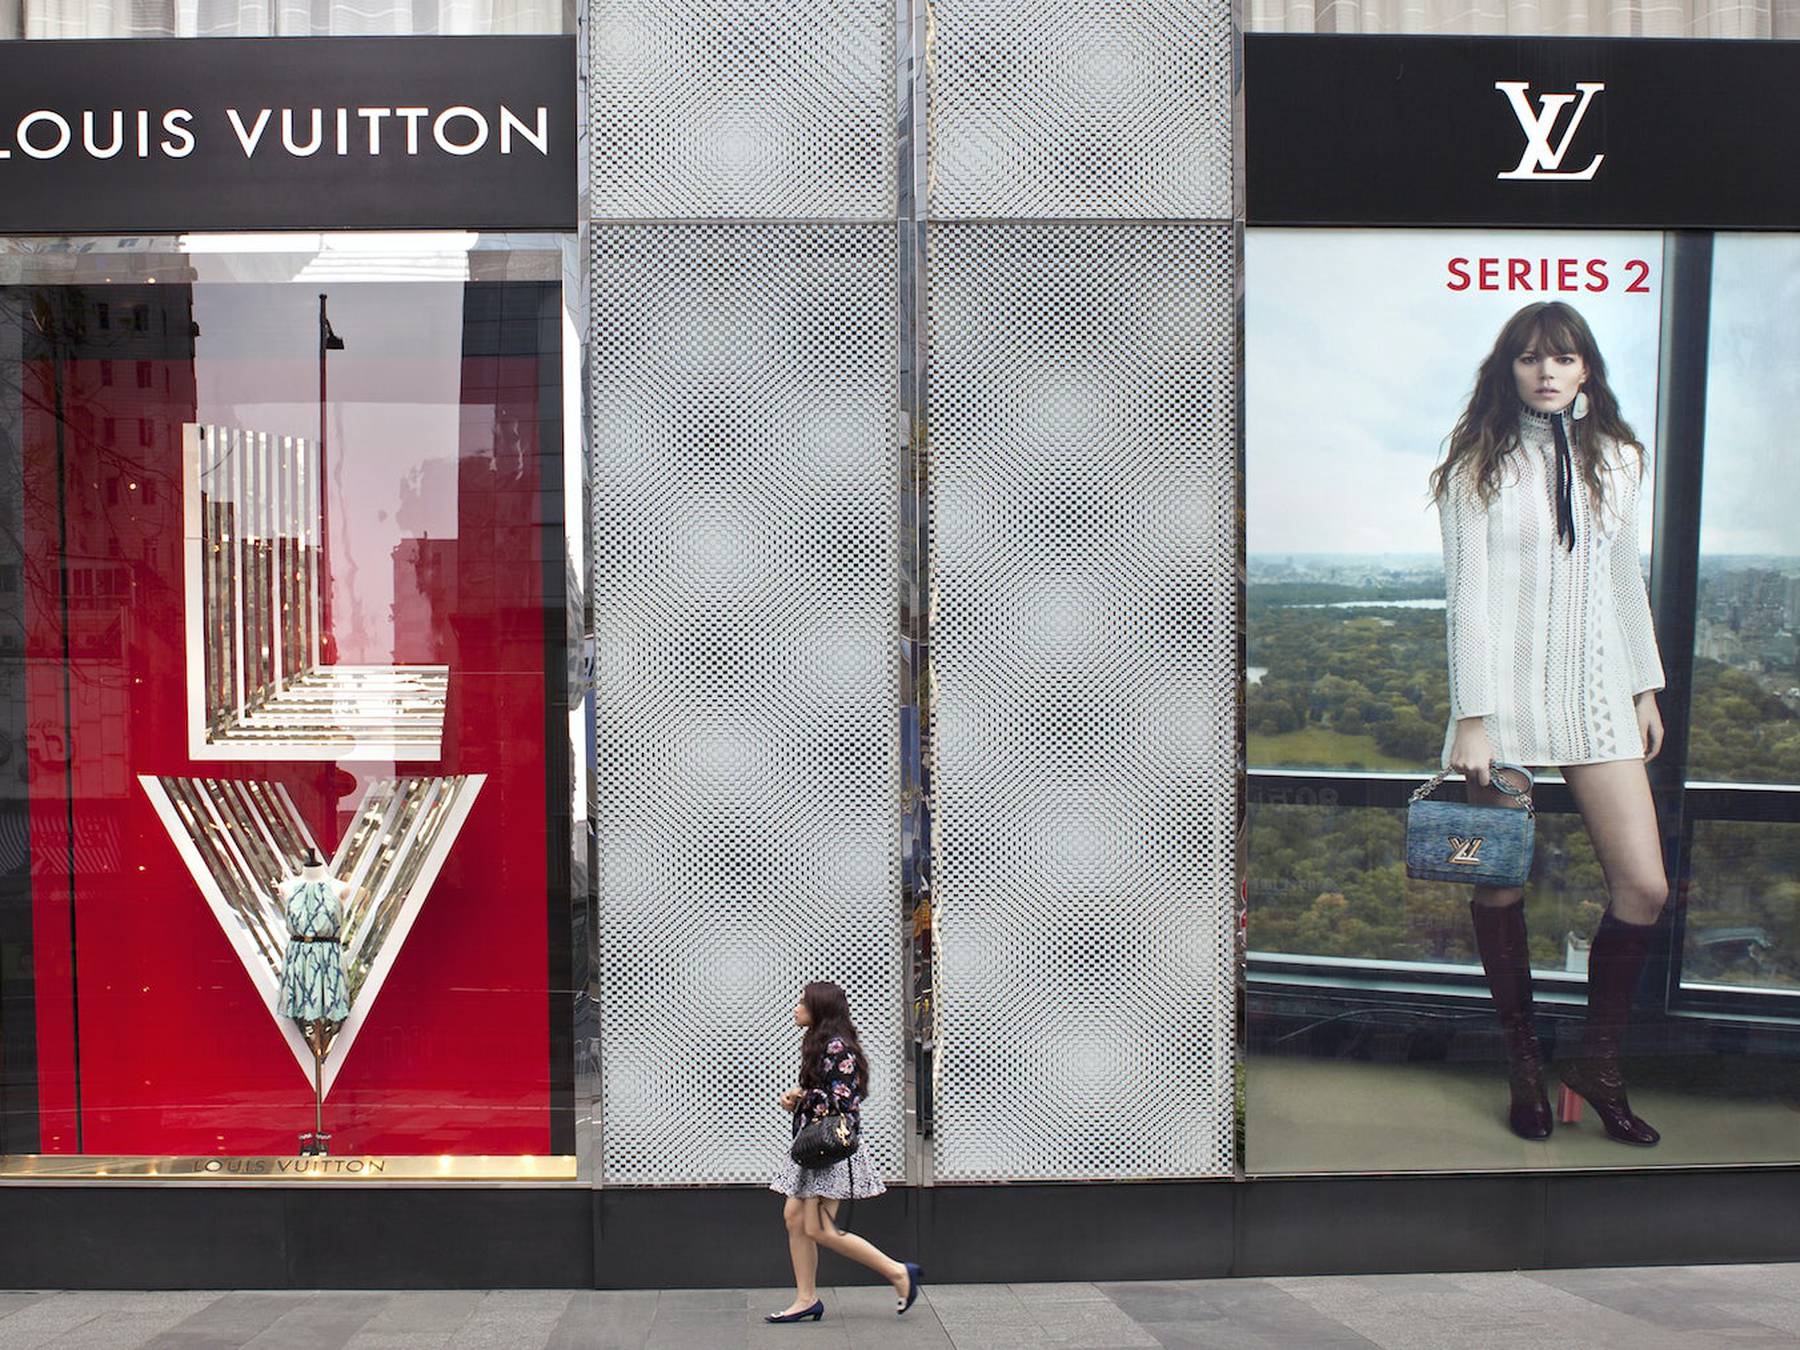 With a standout men's show, Louis Vuitton CEO Michael Burke exits